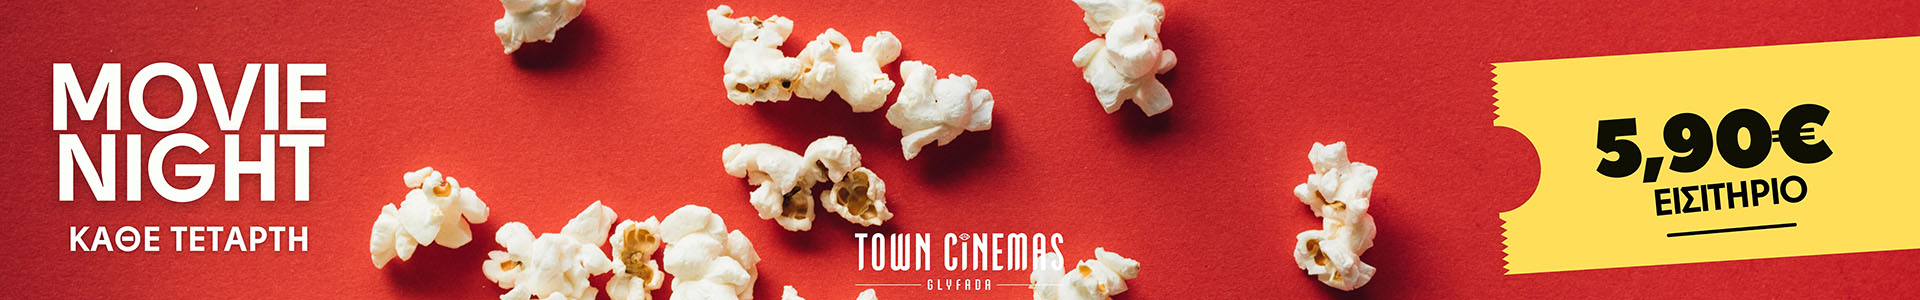 Town cinemas - Σινεμά Γλυφάδα - Movie night κάθε Τετάρτη